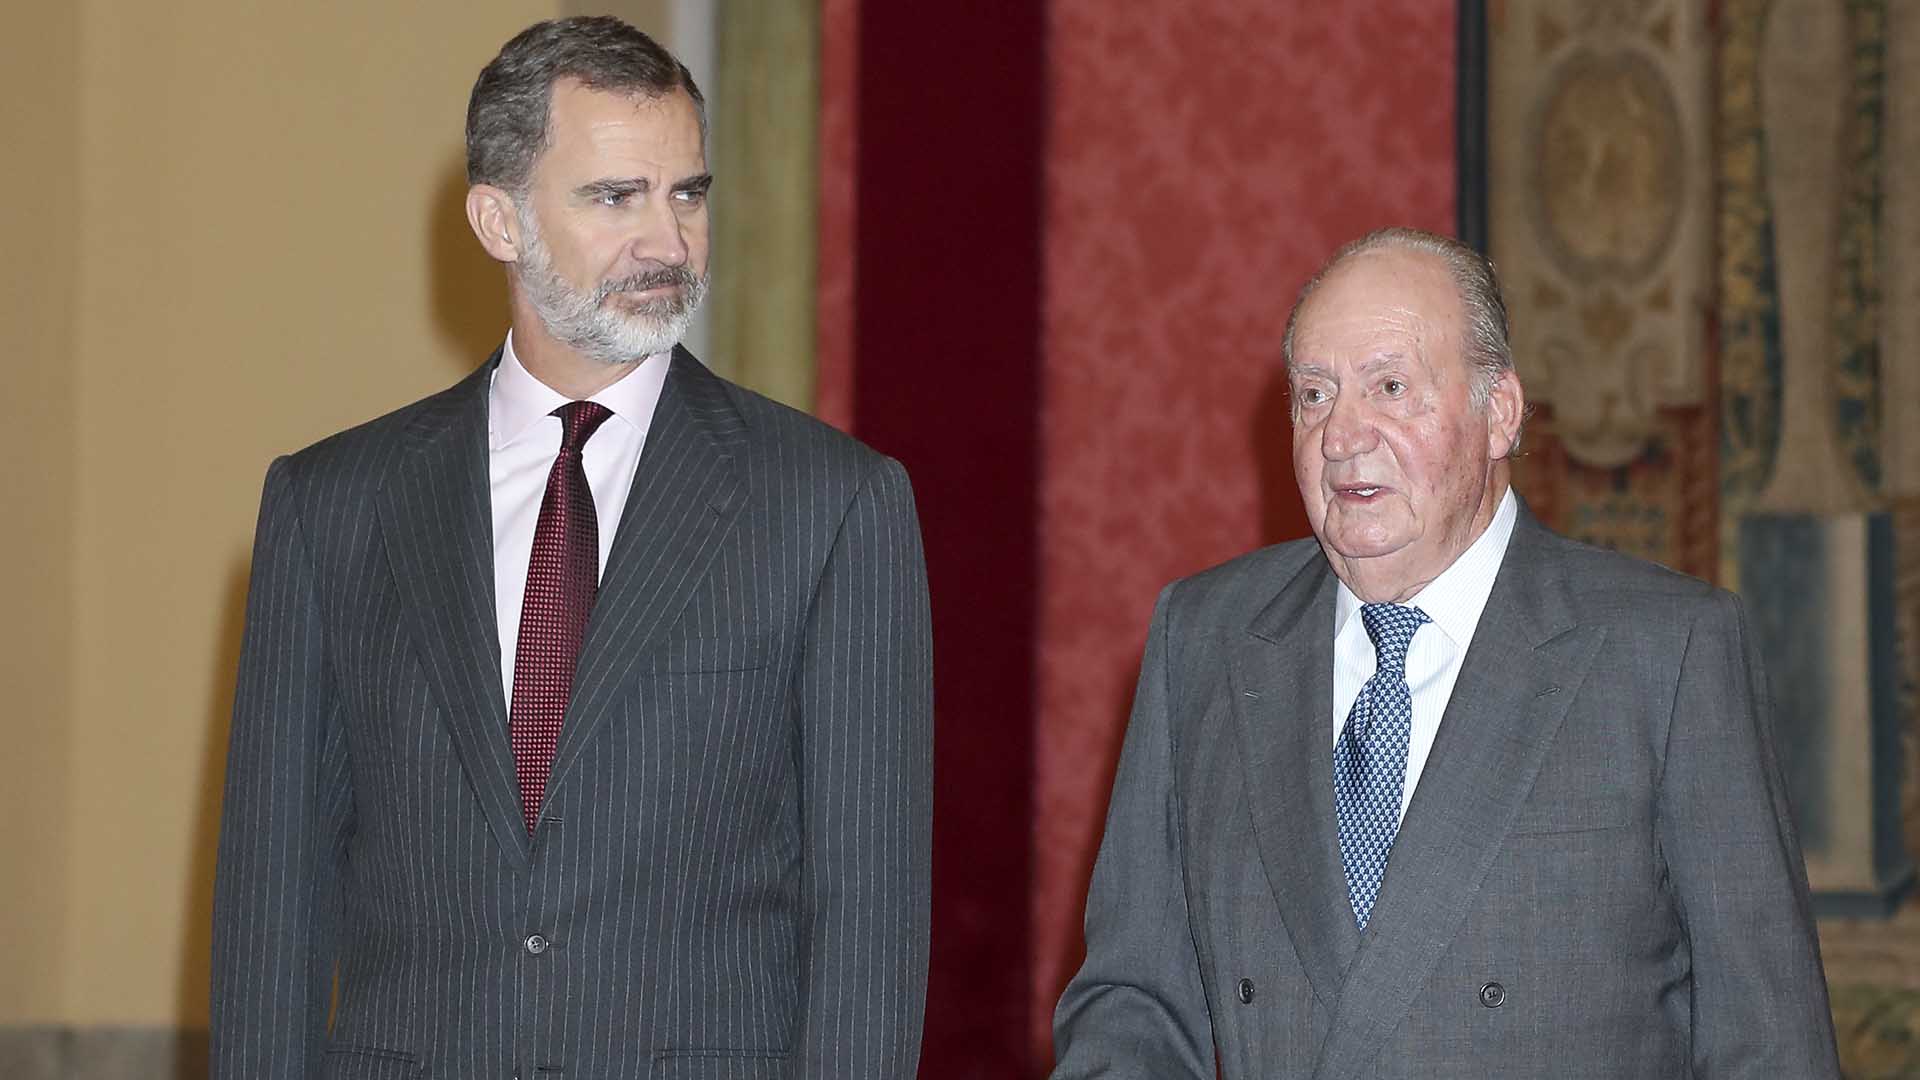 La Reina Sofía se marcha de España cuando viene el Rey Juan Carlos